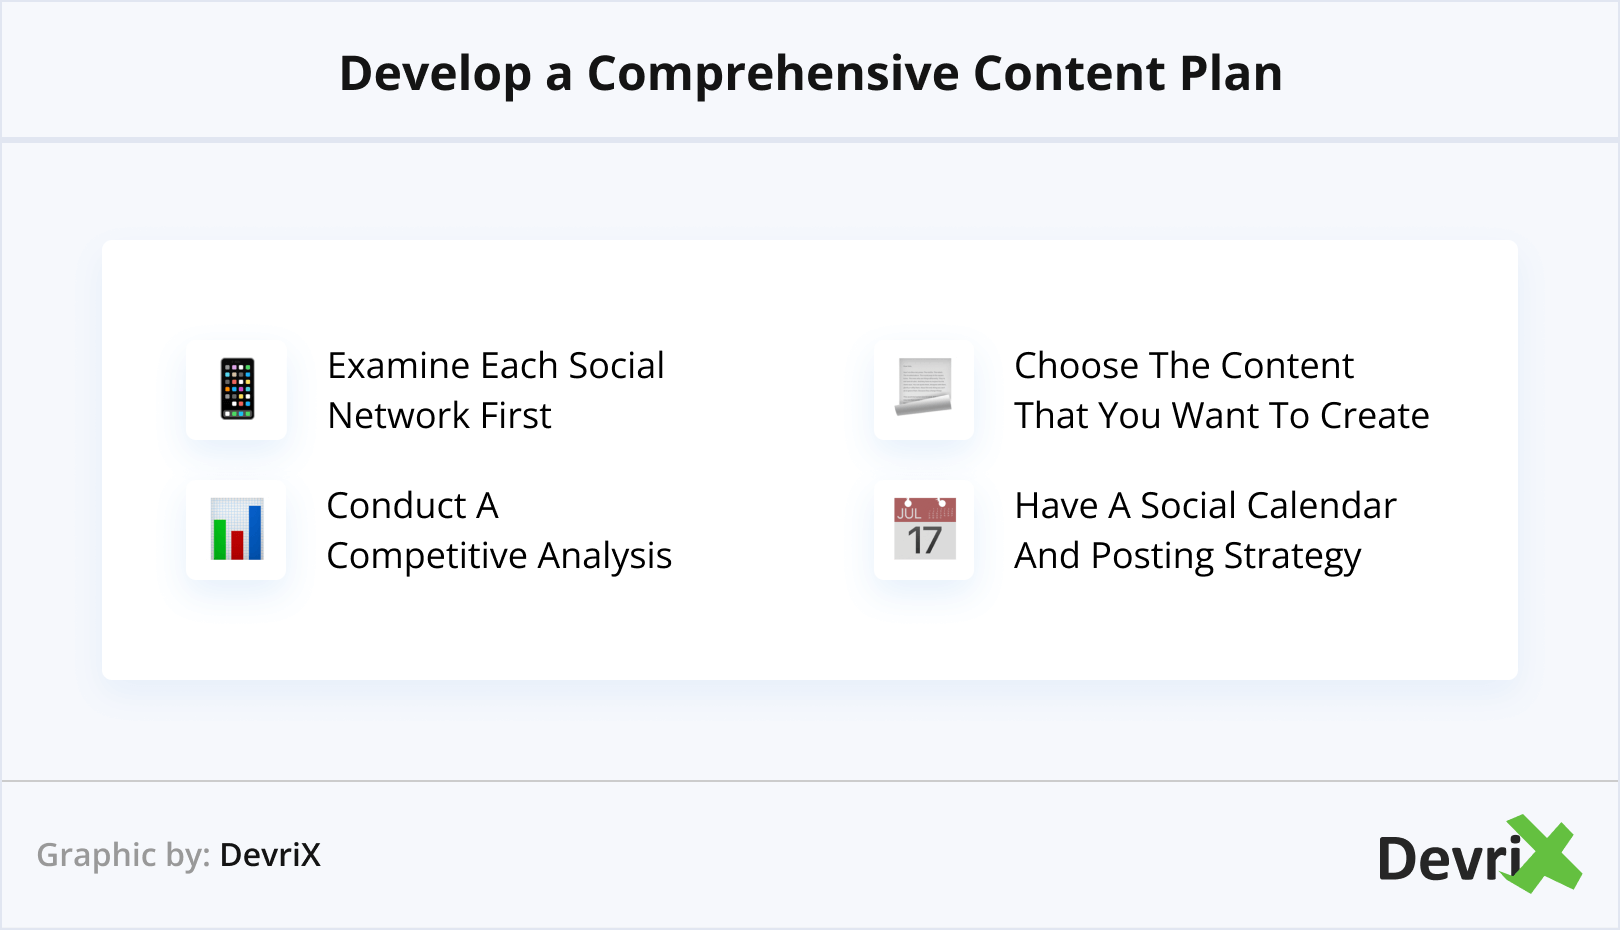 Develop a Comprehensive Content Plan